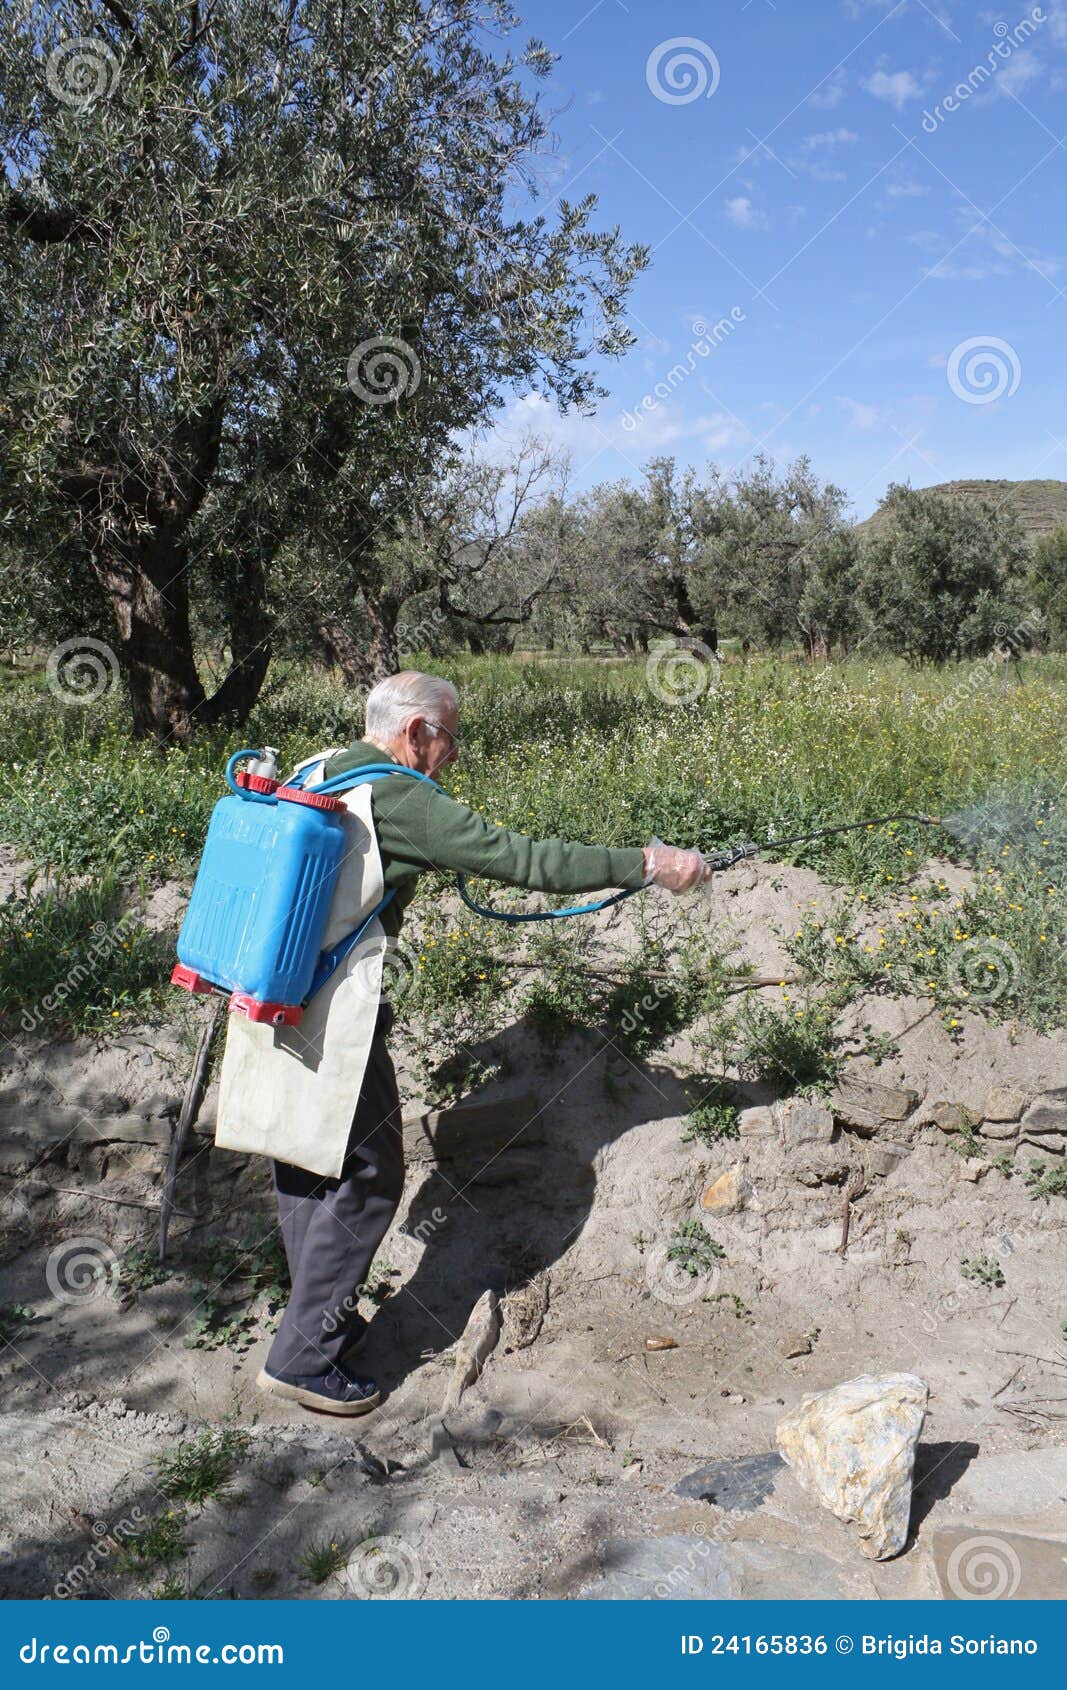 elderly farmer spraying weed pesticide